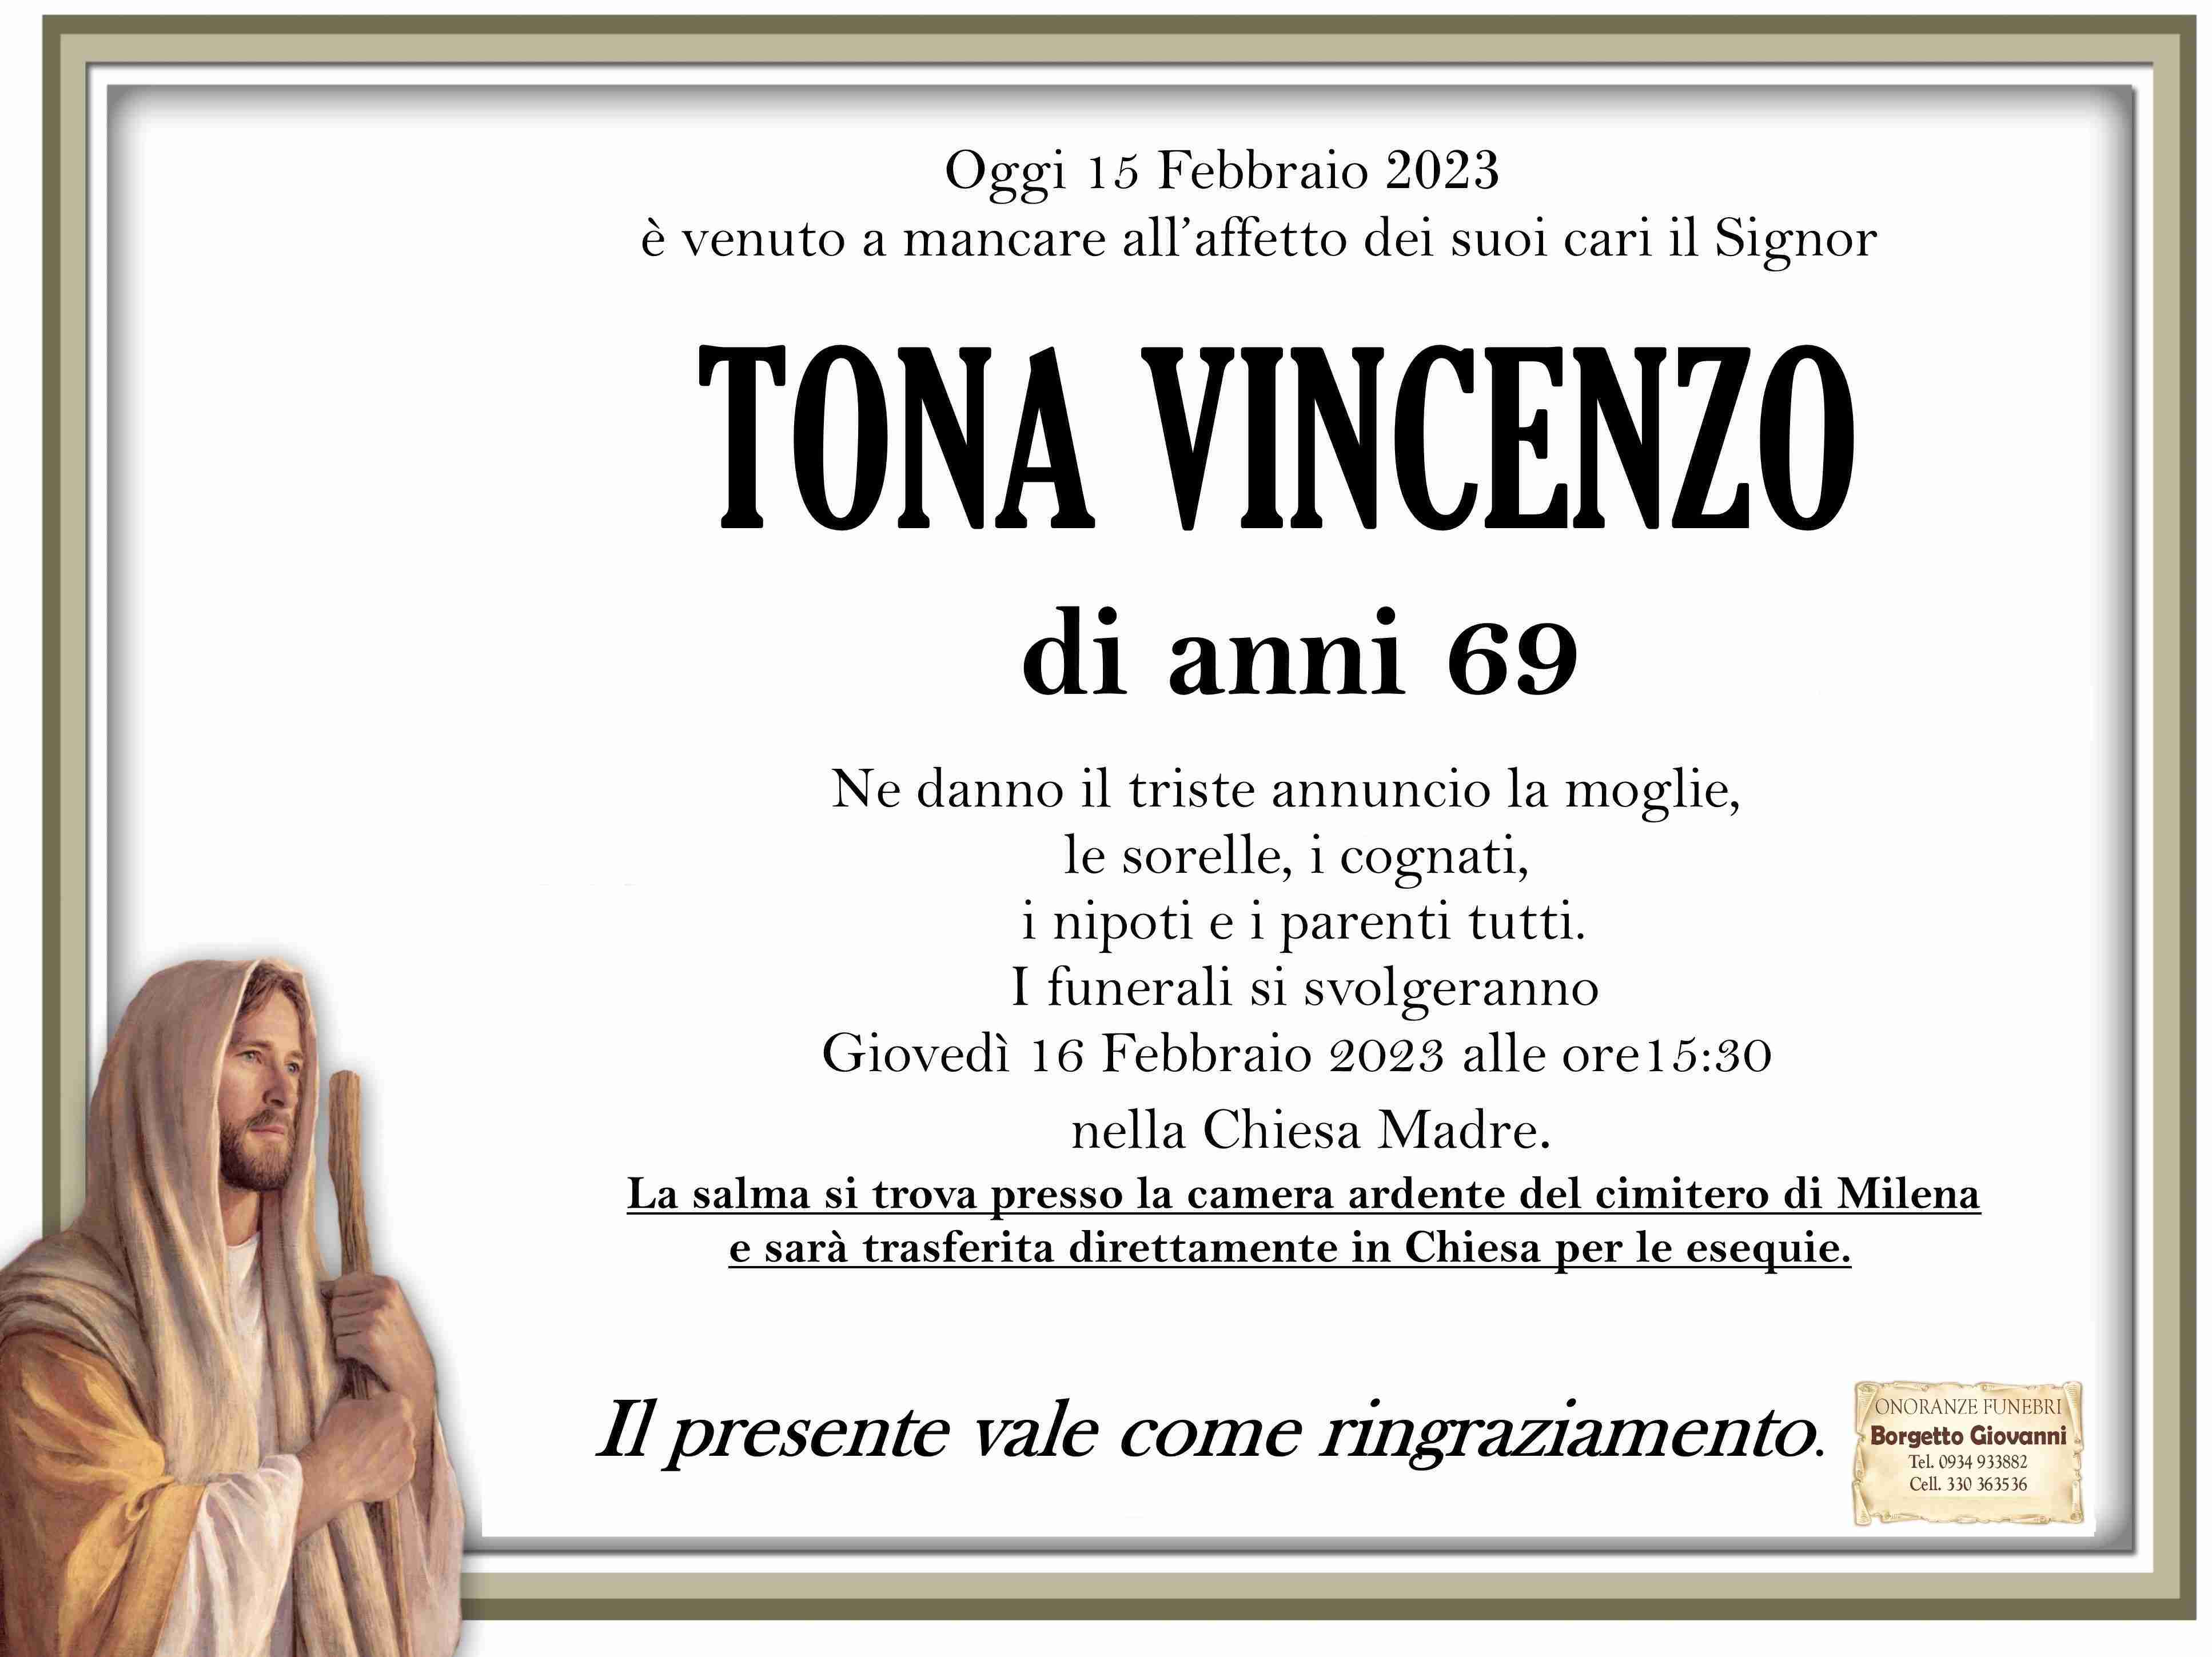 Vincenzo Tona